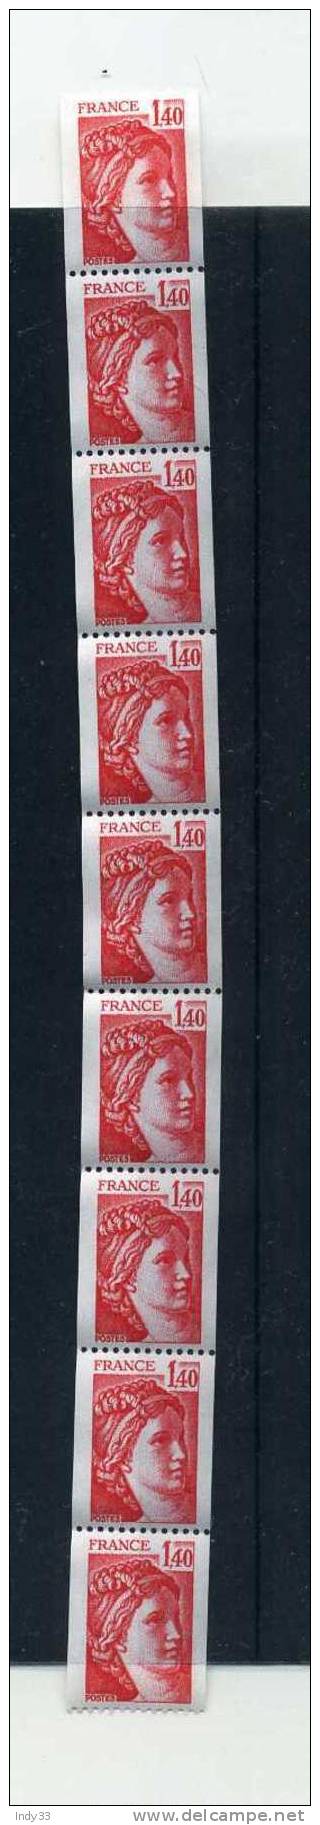 - FRANCE ROULETTE . SABINE DE GANDON N°2102 Y T 1980 NEUFS SANS CHARNIERE - Coil Stamps